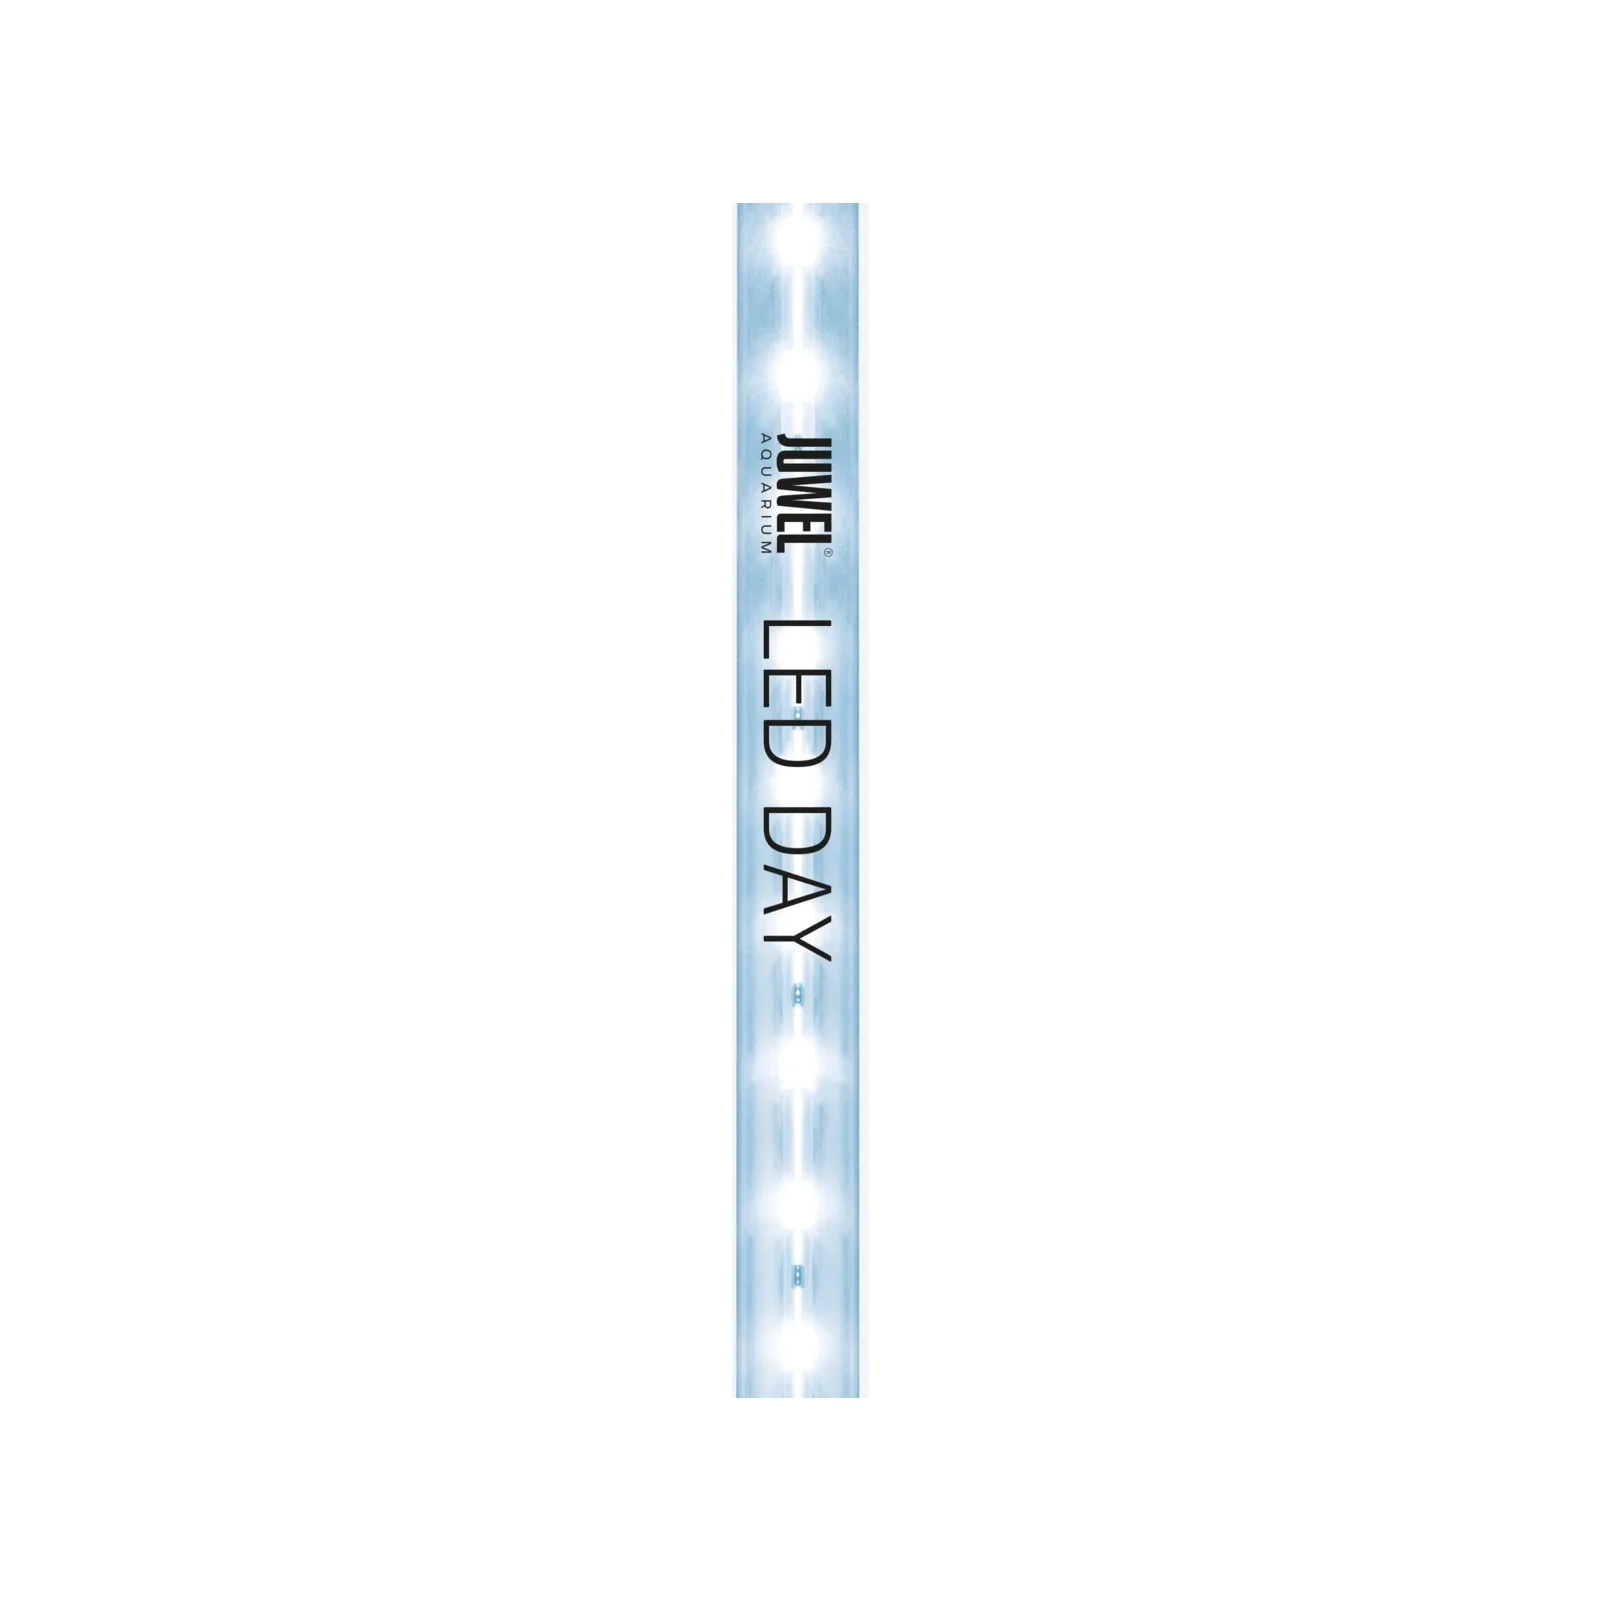 Светильник для аквариума Juwel Day LED 1047 мм (4022573868104) изображение 2